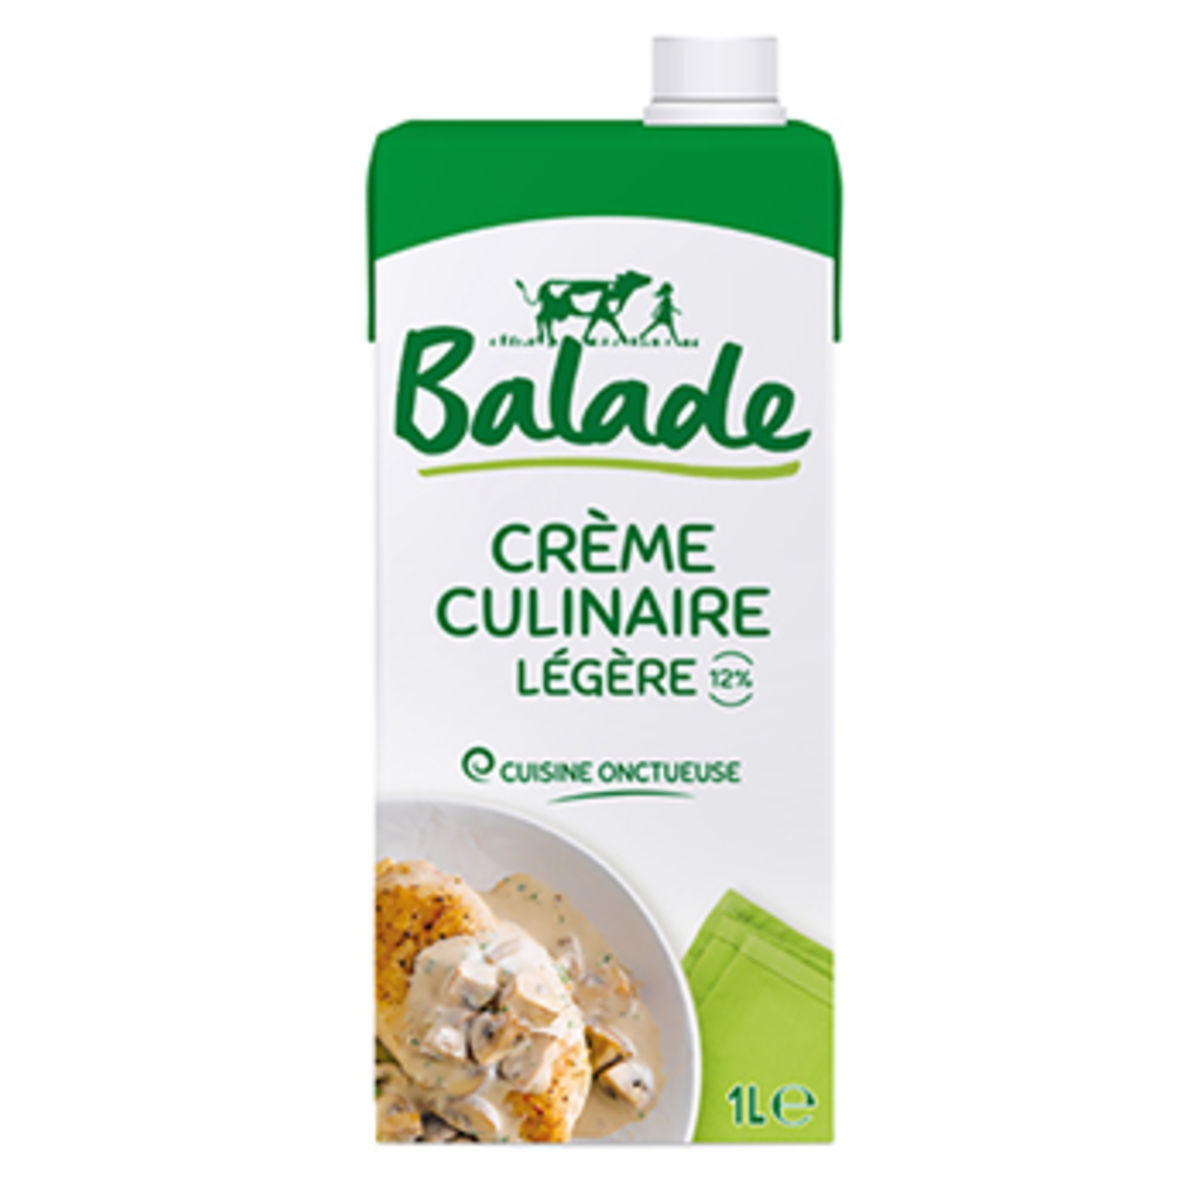 Balade Crème Culinaire Légère 12% 1 L